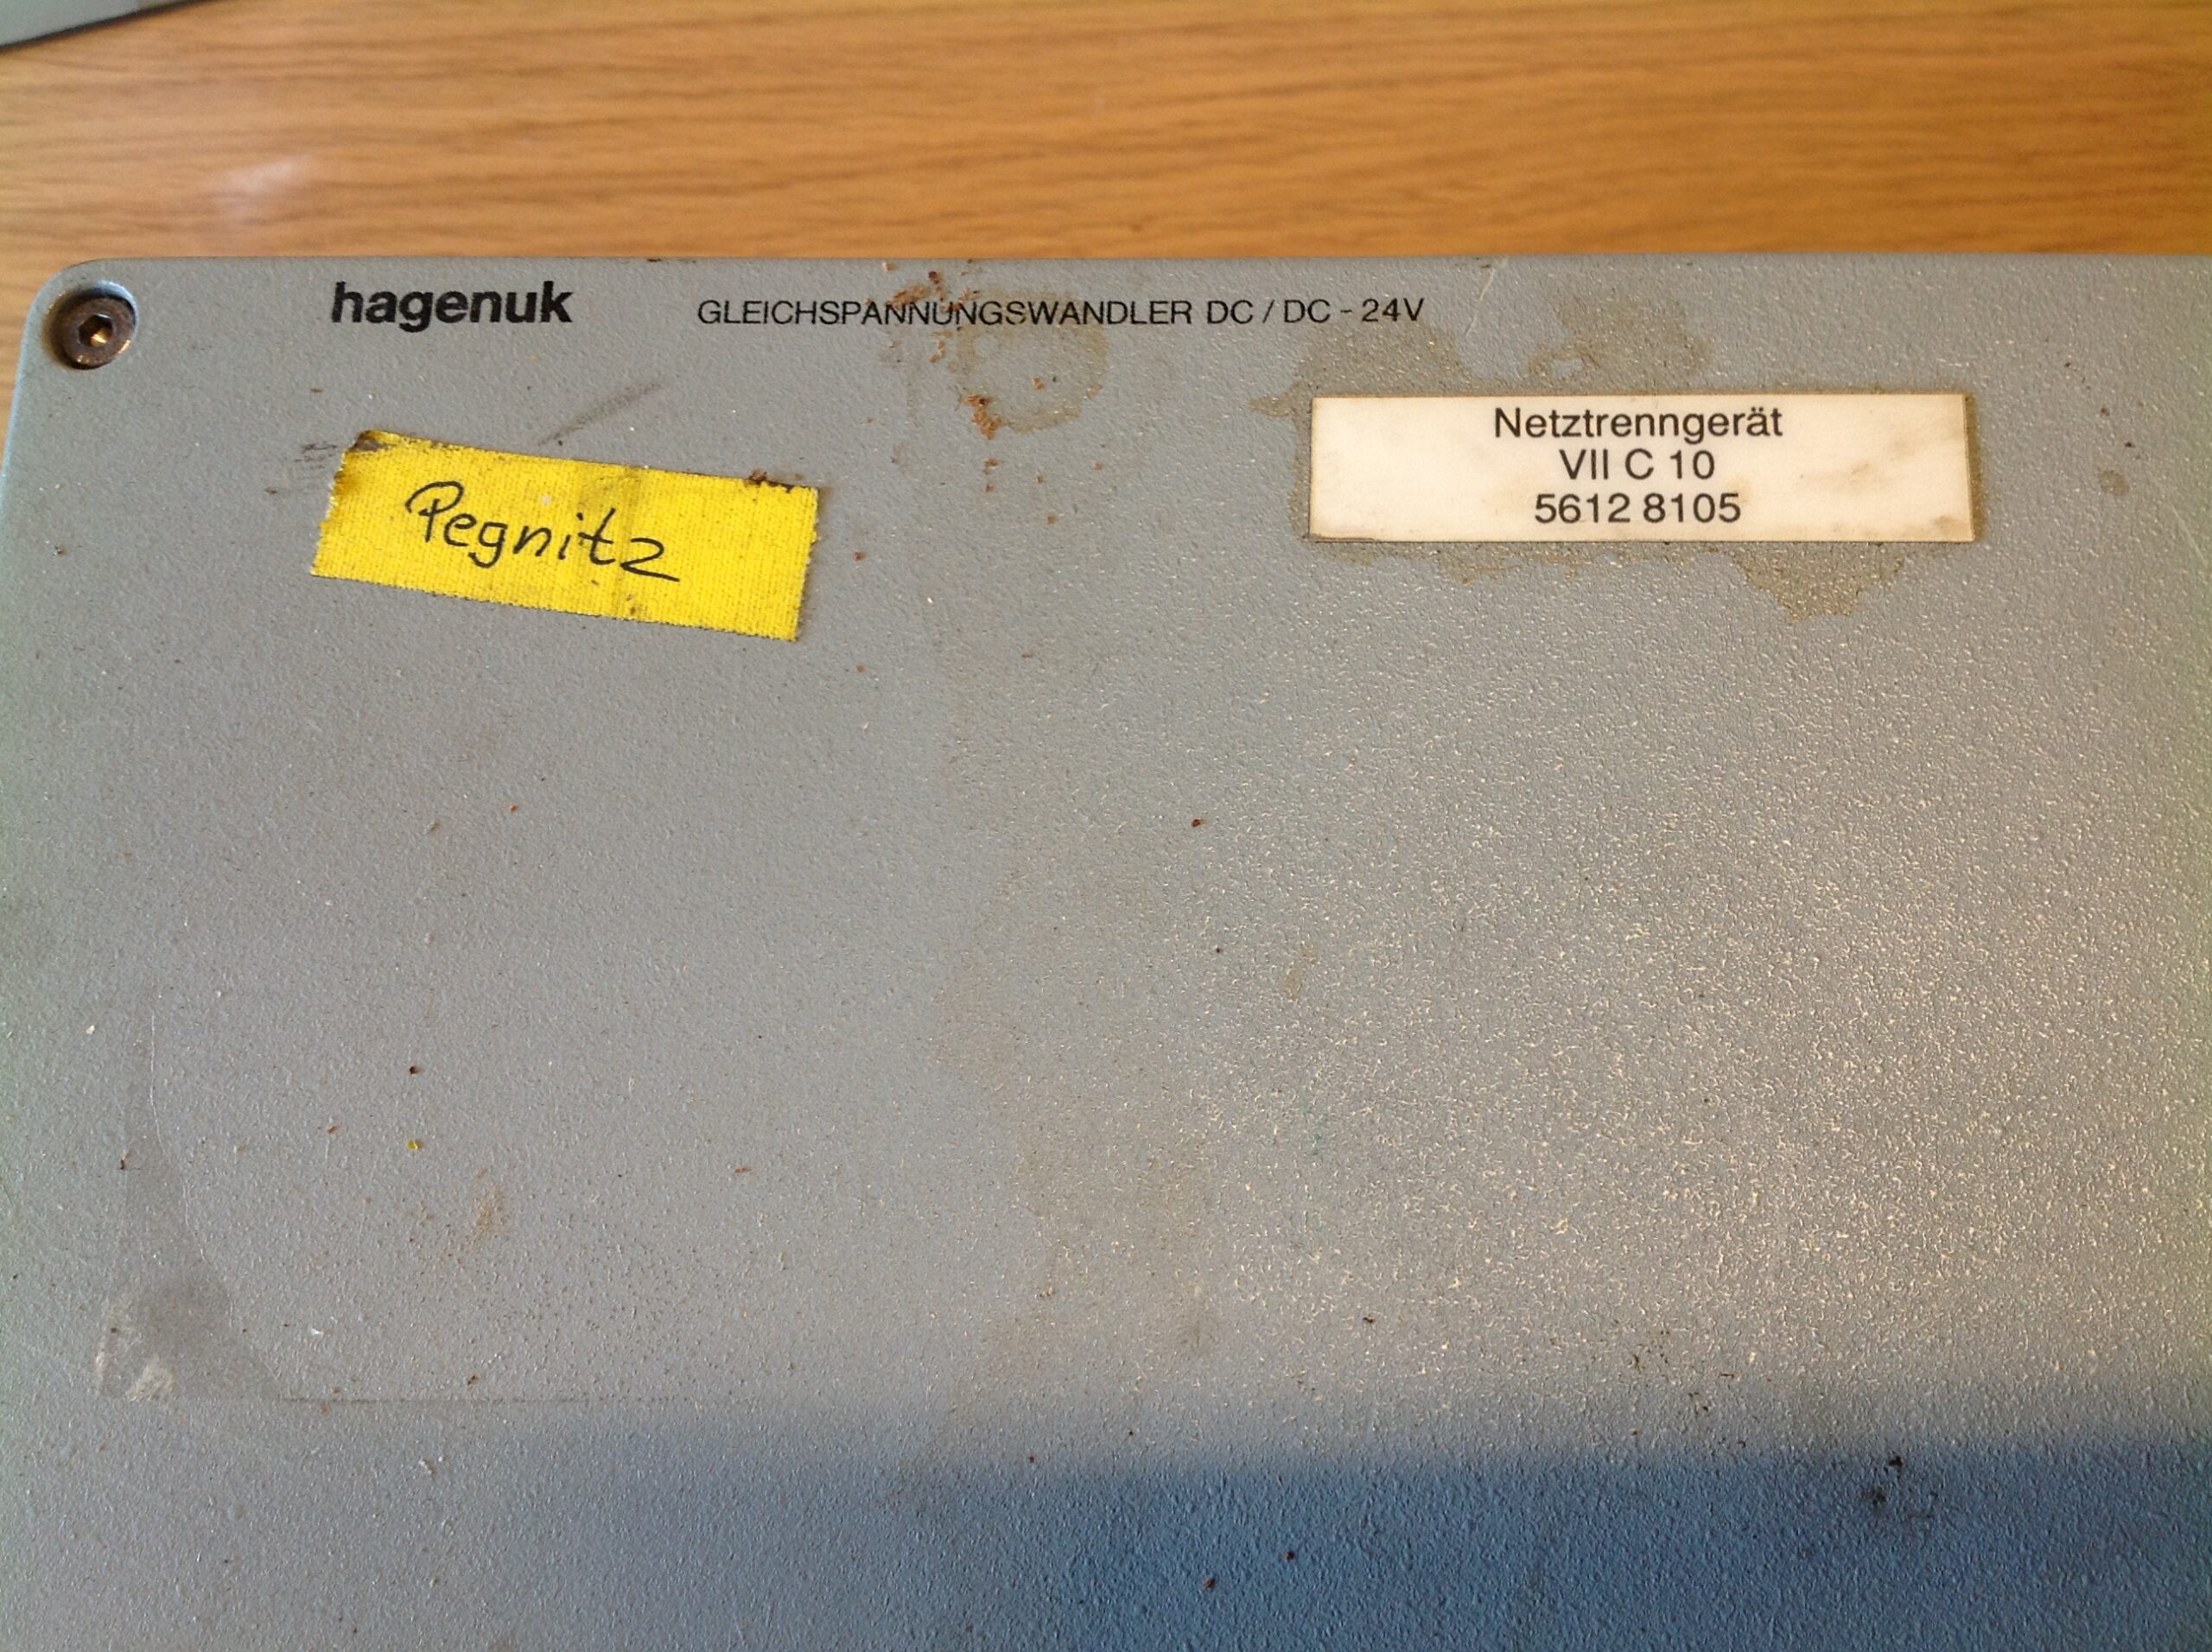 Hagenuk Gleichspannungswandler DC/DC 24 V, Netztrenngerät VII C 10 5612 8105